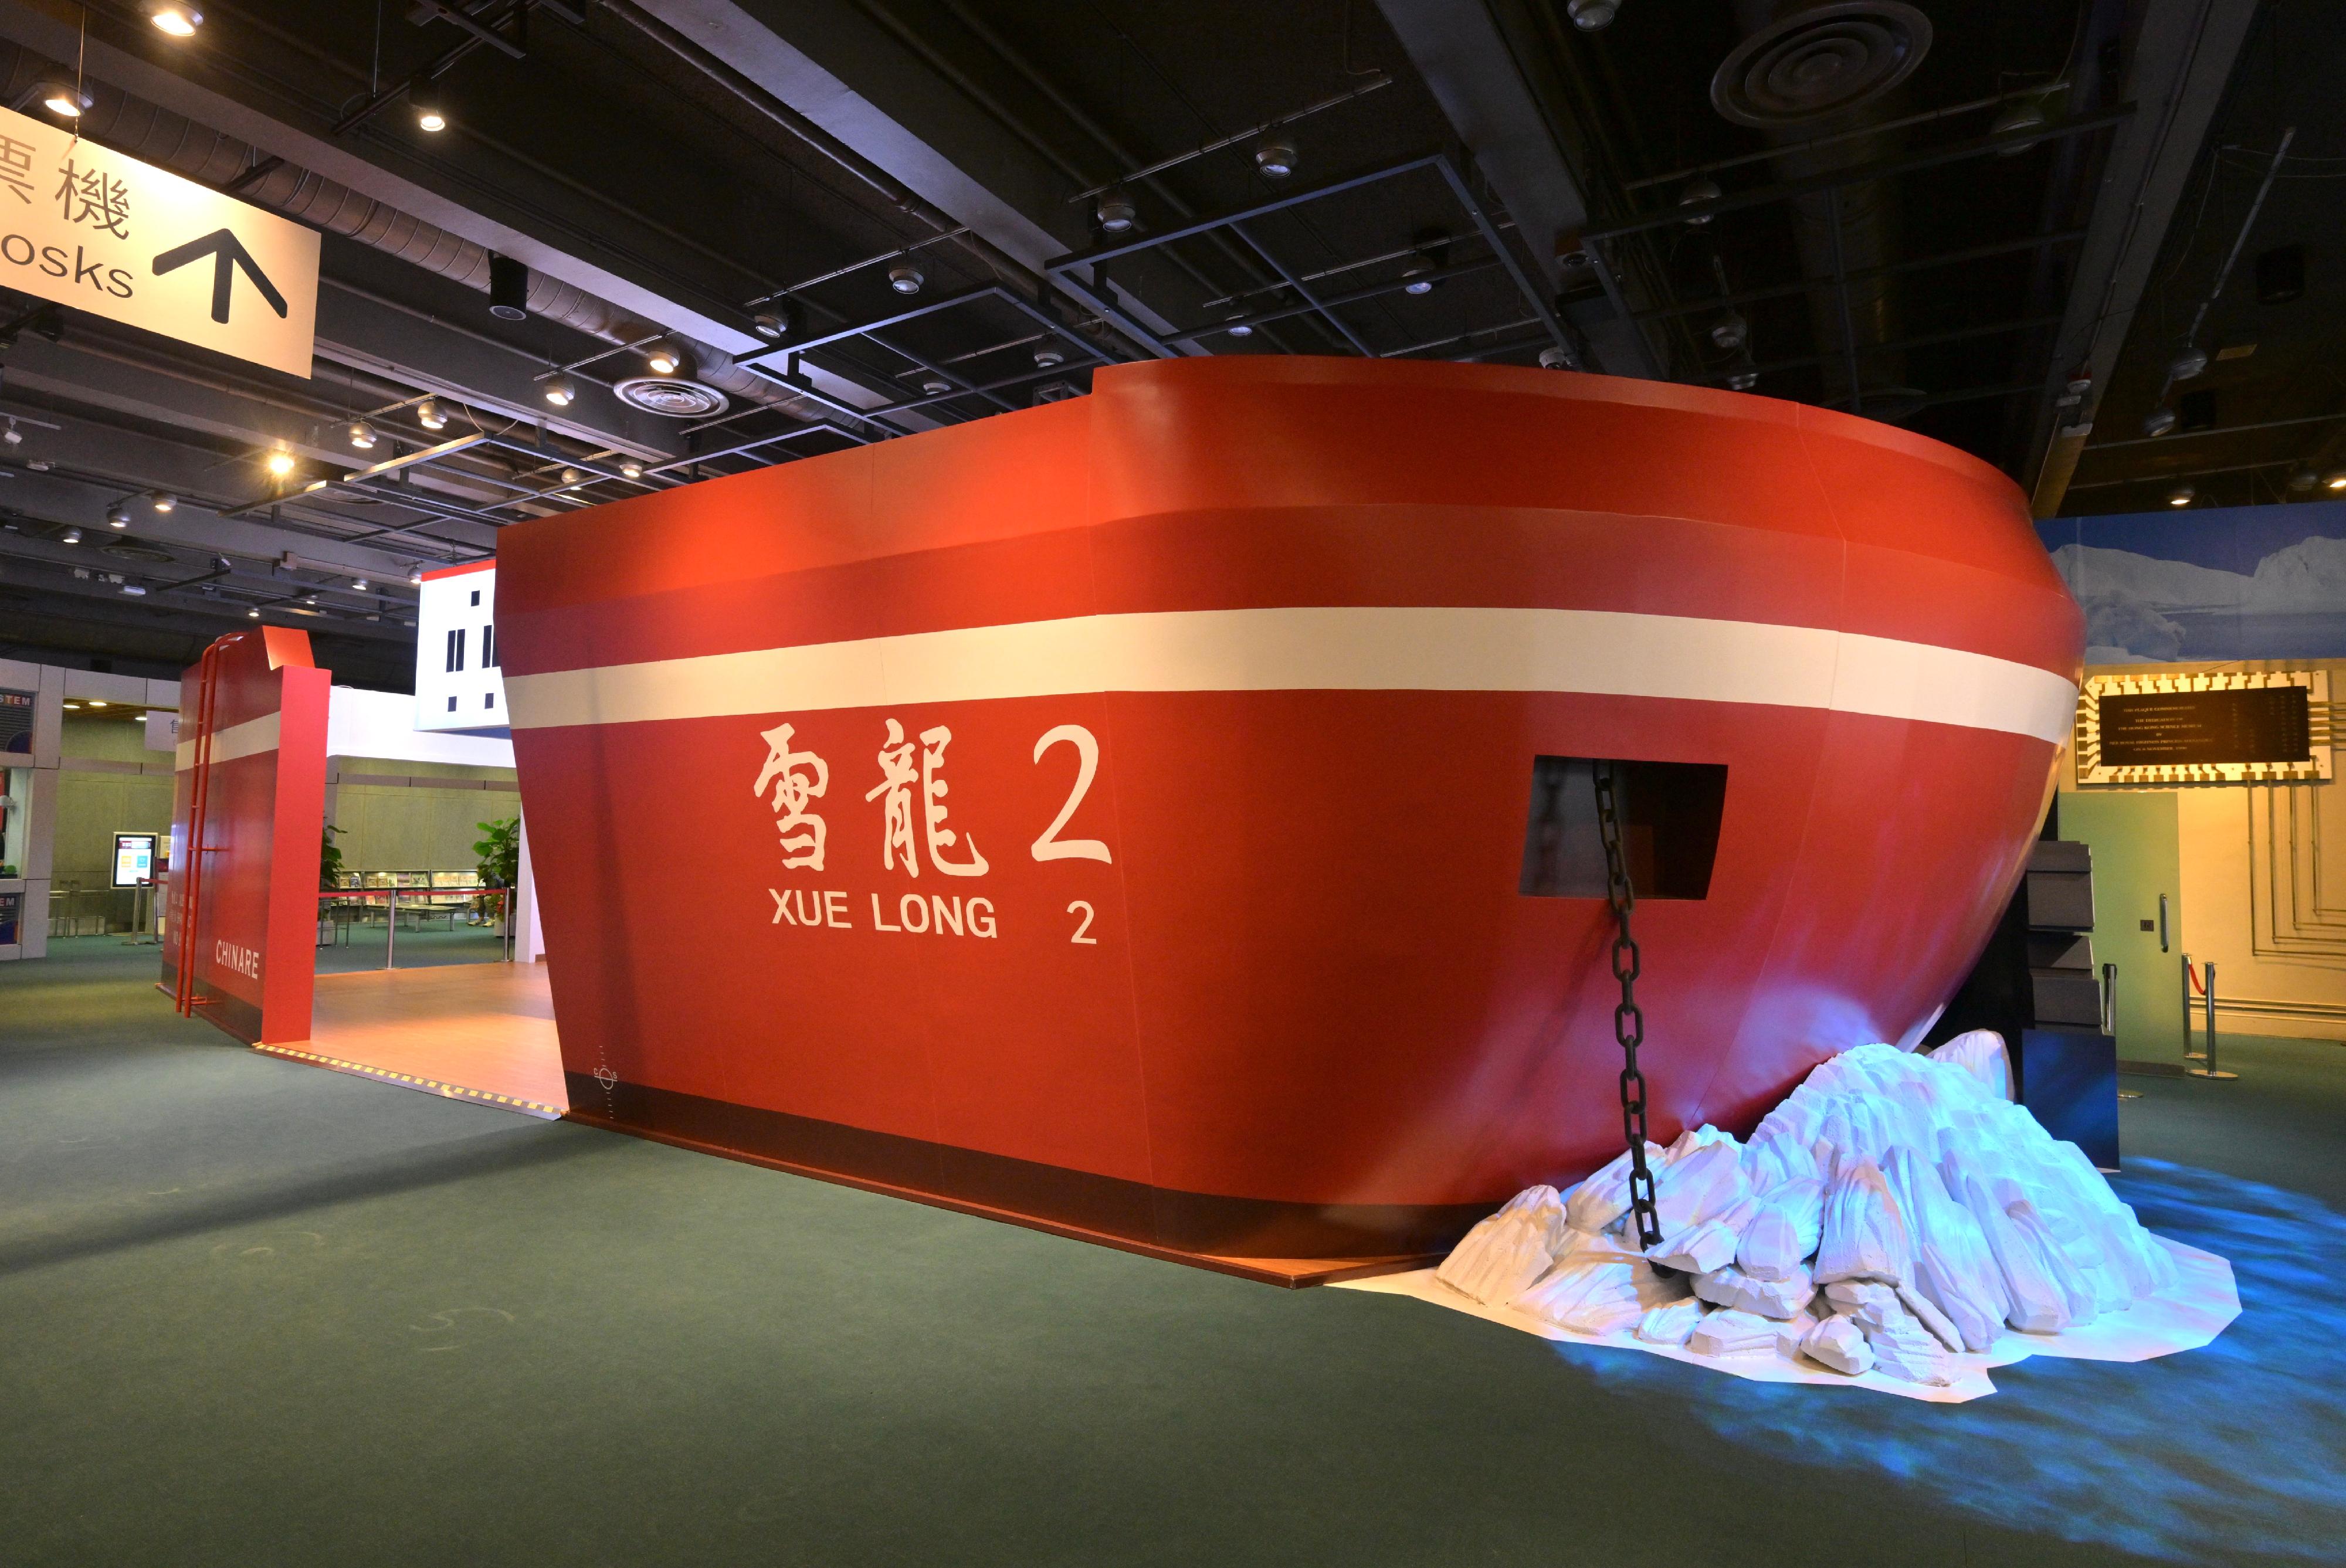 香港科学馆今日（三月十八日）推出新专题展览「极地科研与气候变化」。图示以中国极地考察破冰船「雪龙2」号为设计蓝本的展区，让参观者仿如置身船舱，了解中国在极地科研的进程。